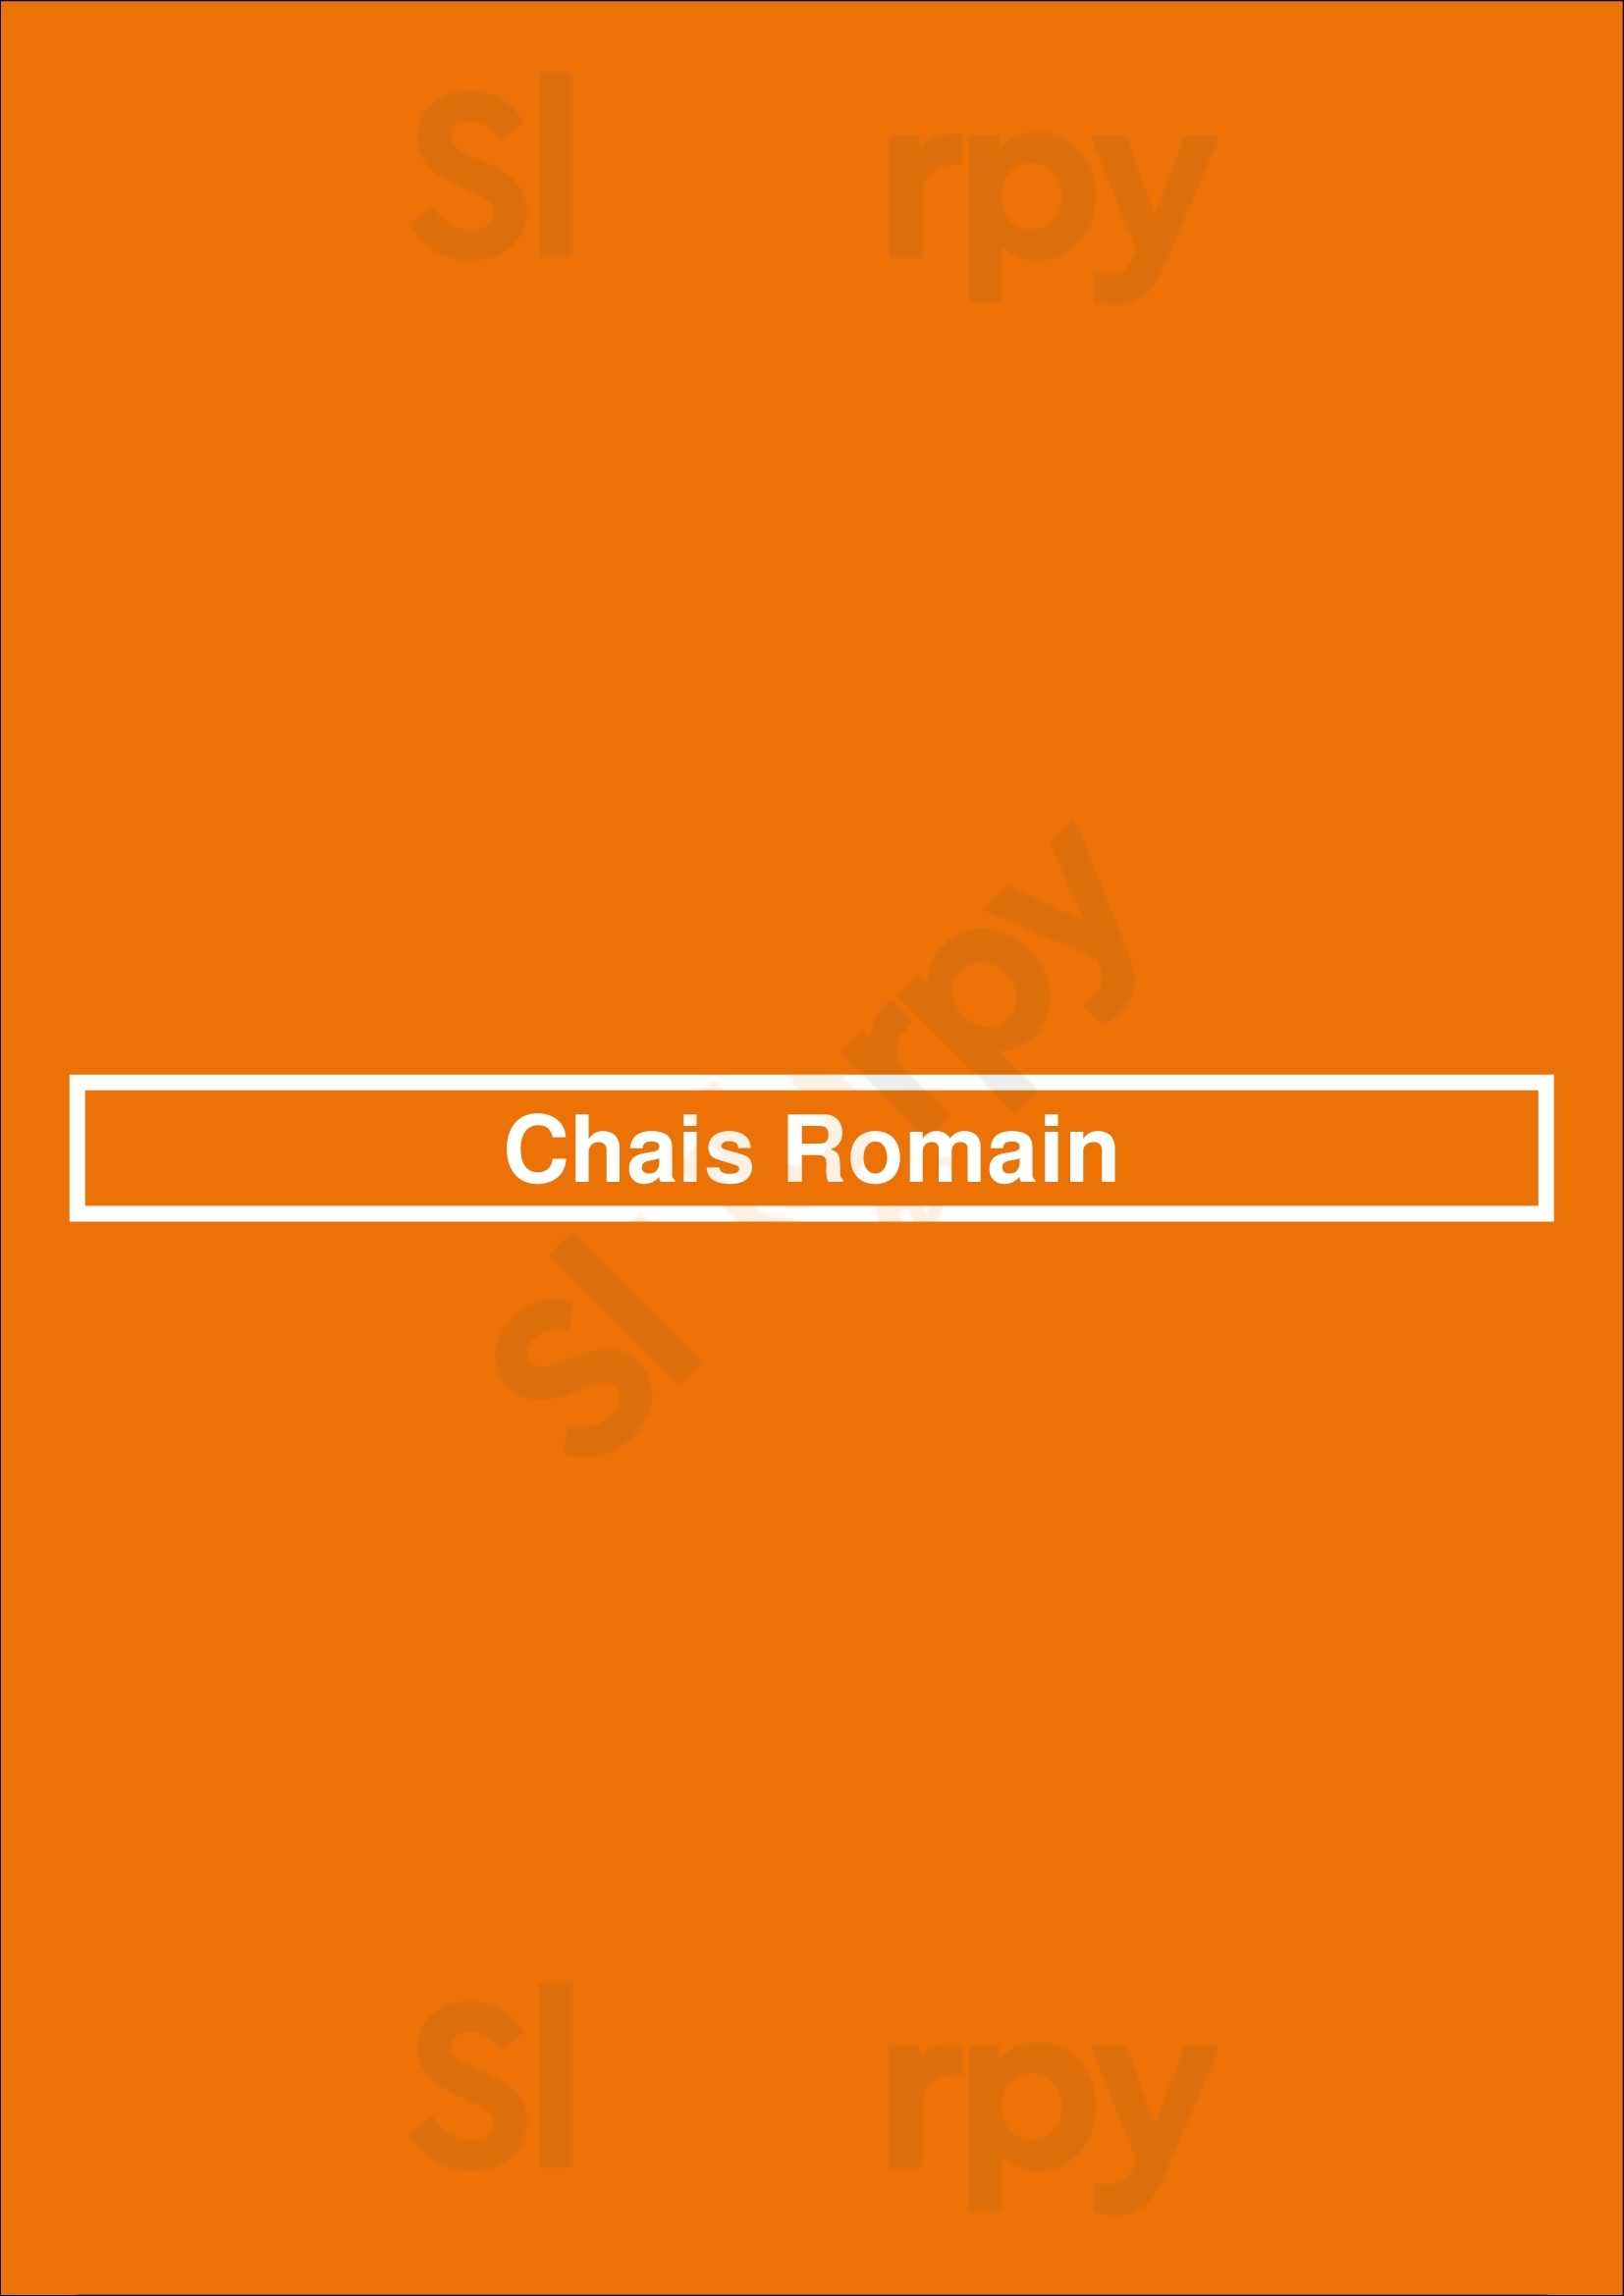 Chais Romain Lyon Menu - 1